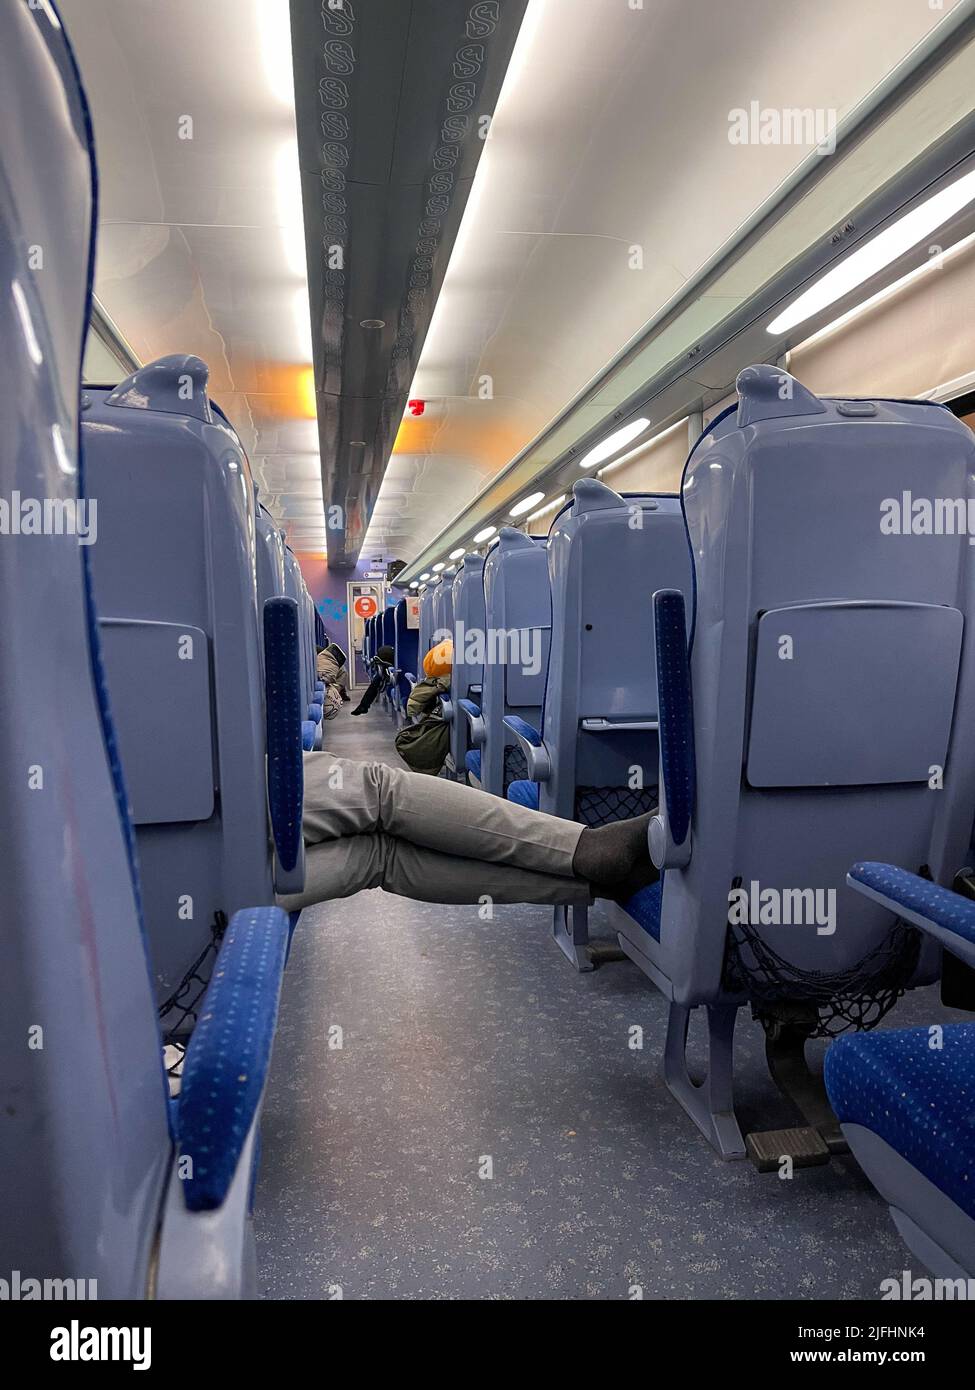 Un homme méconnaissable dort dans le train Banque D'Images